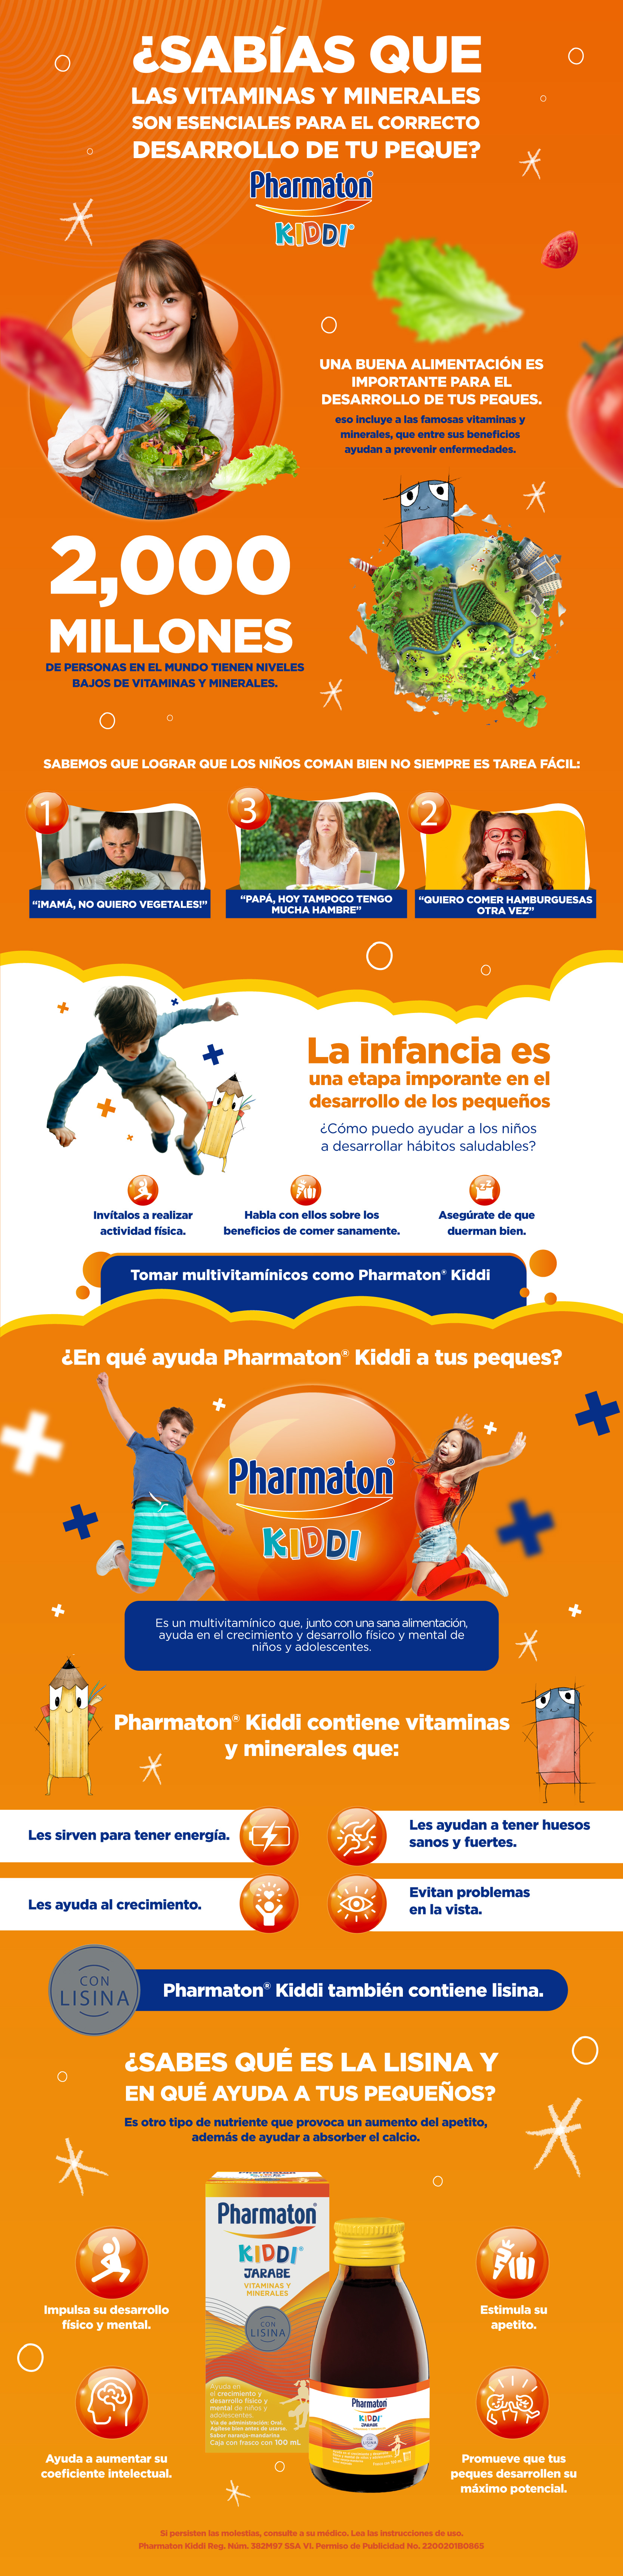 Pharmaton kiddi Multivitamínico para Niños Jarabe 100 ml, Sabor  Naranja-Mandarina.